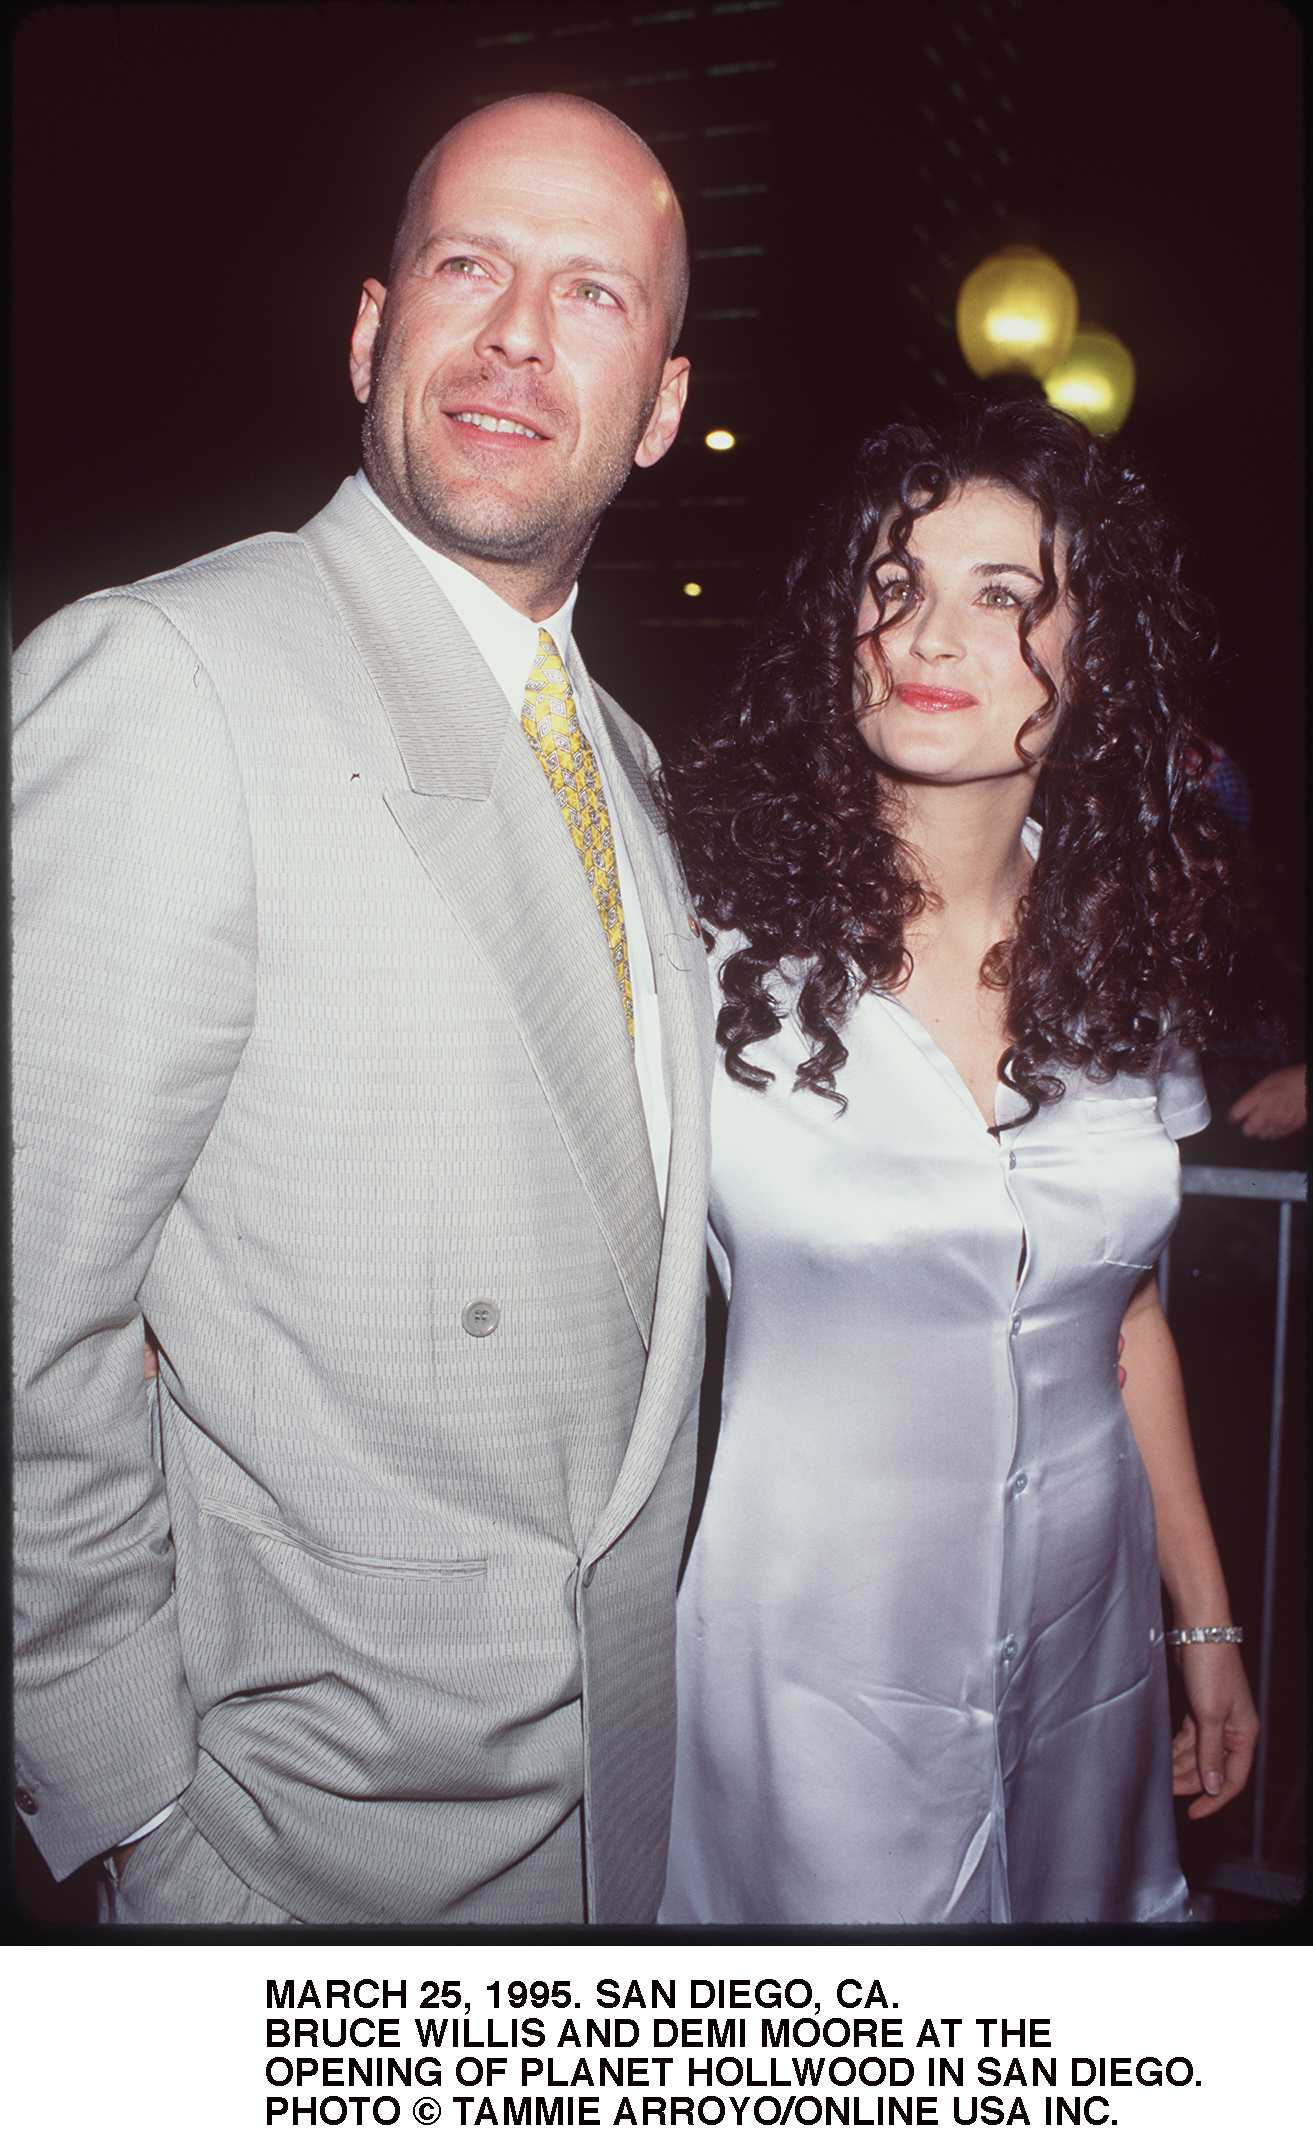 Les acteurs Bruce Willis et sa femme Demi Moore lors de l'ouverture du Planet Hollywood le 25 mars 1995 à San Diego, Californie ┃ Source : Getty Images